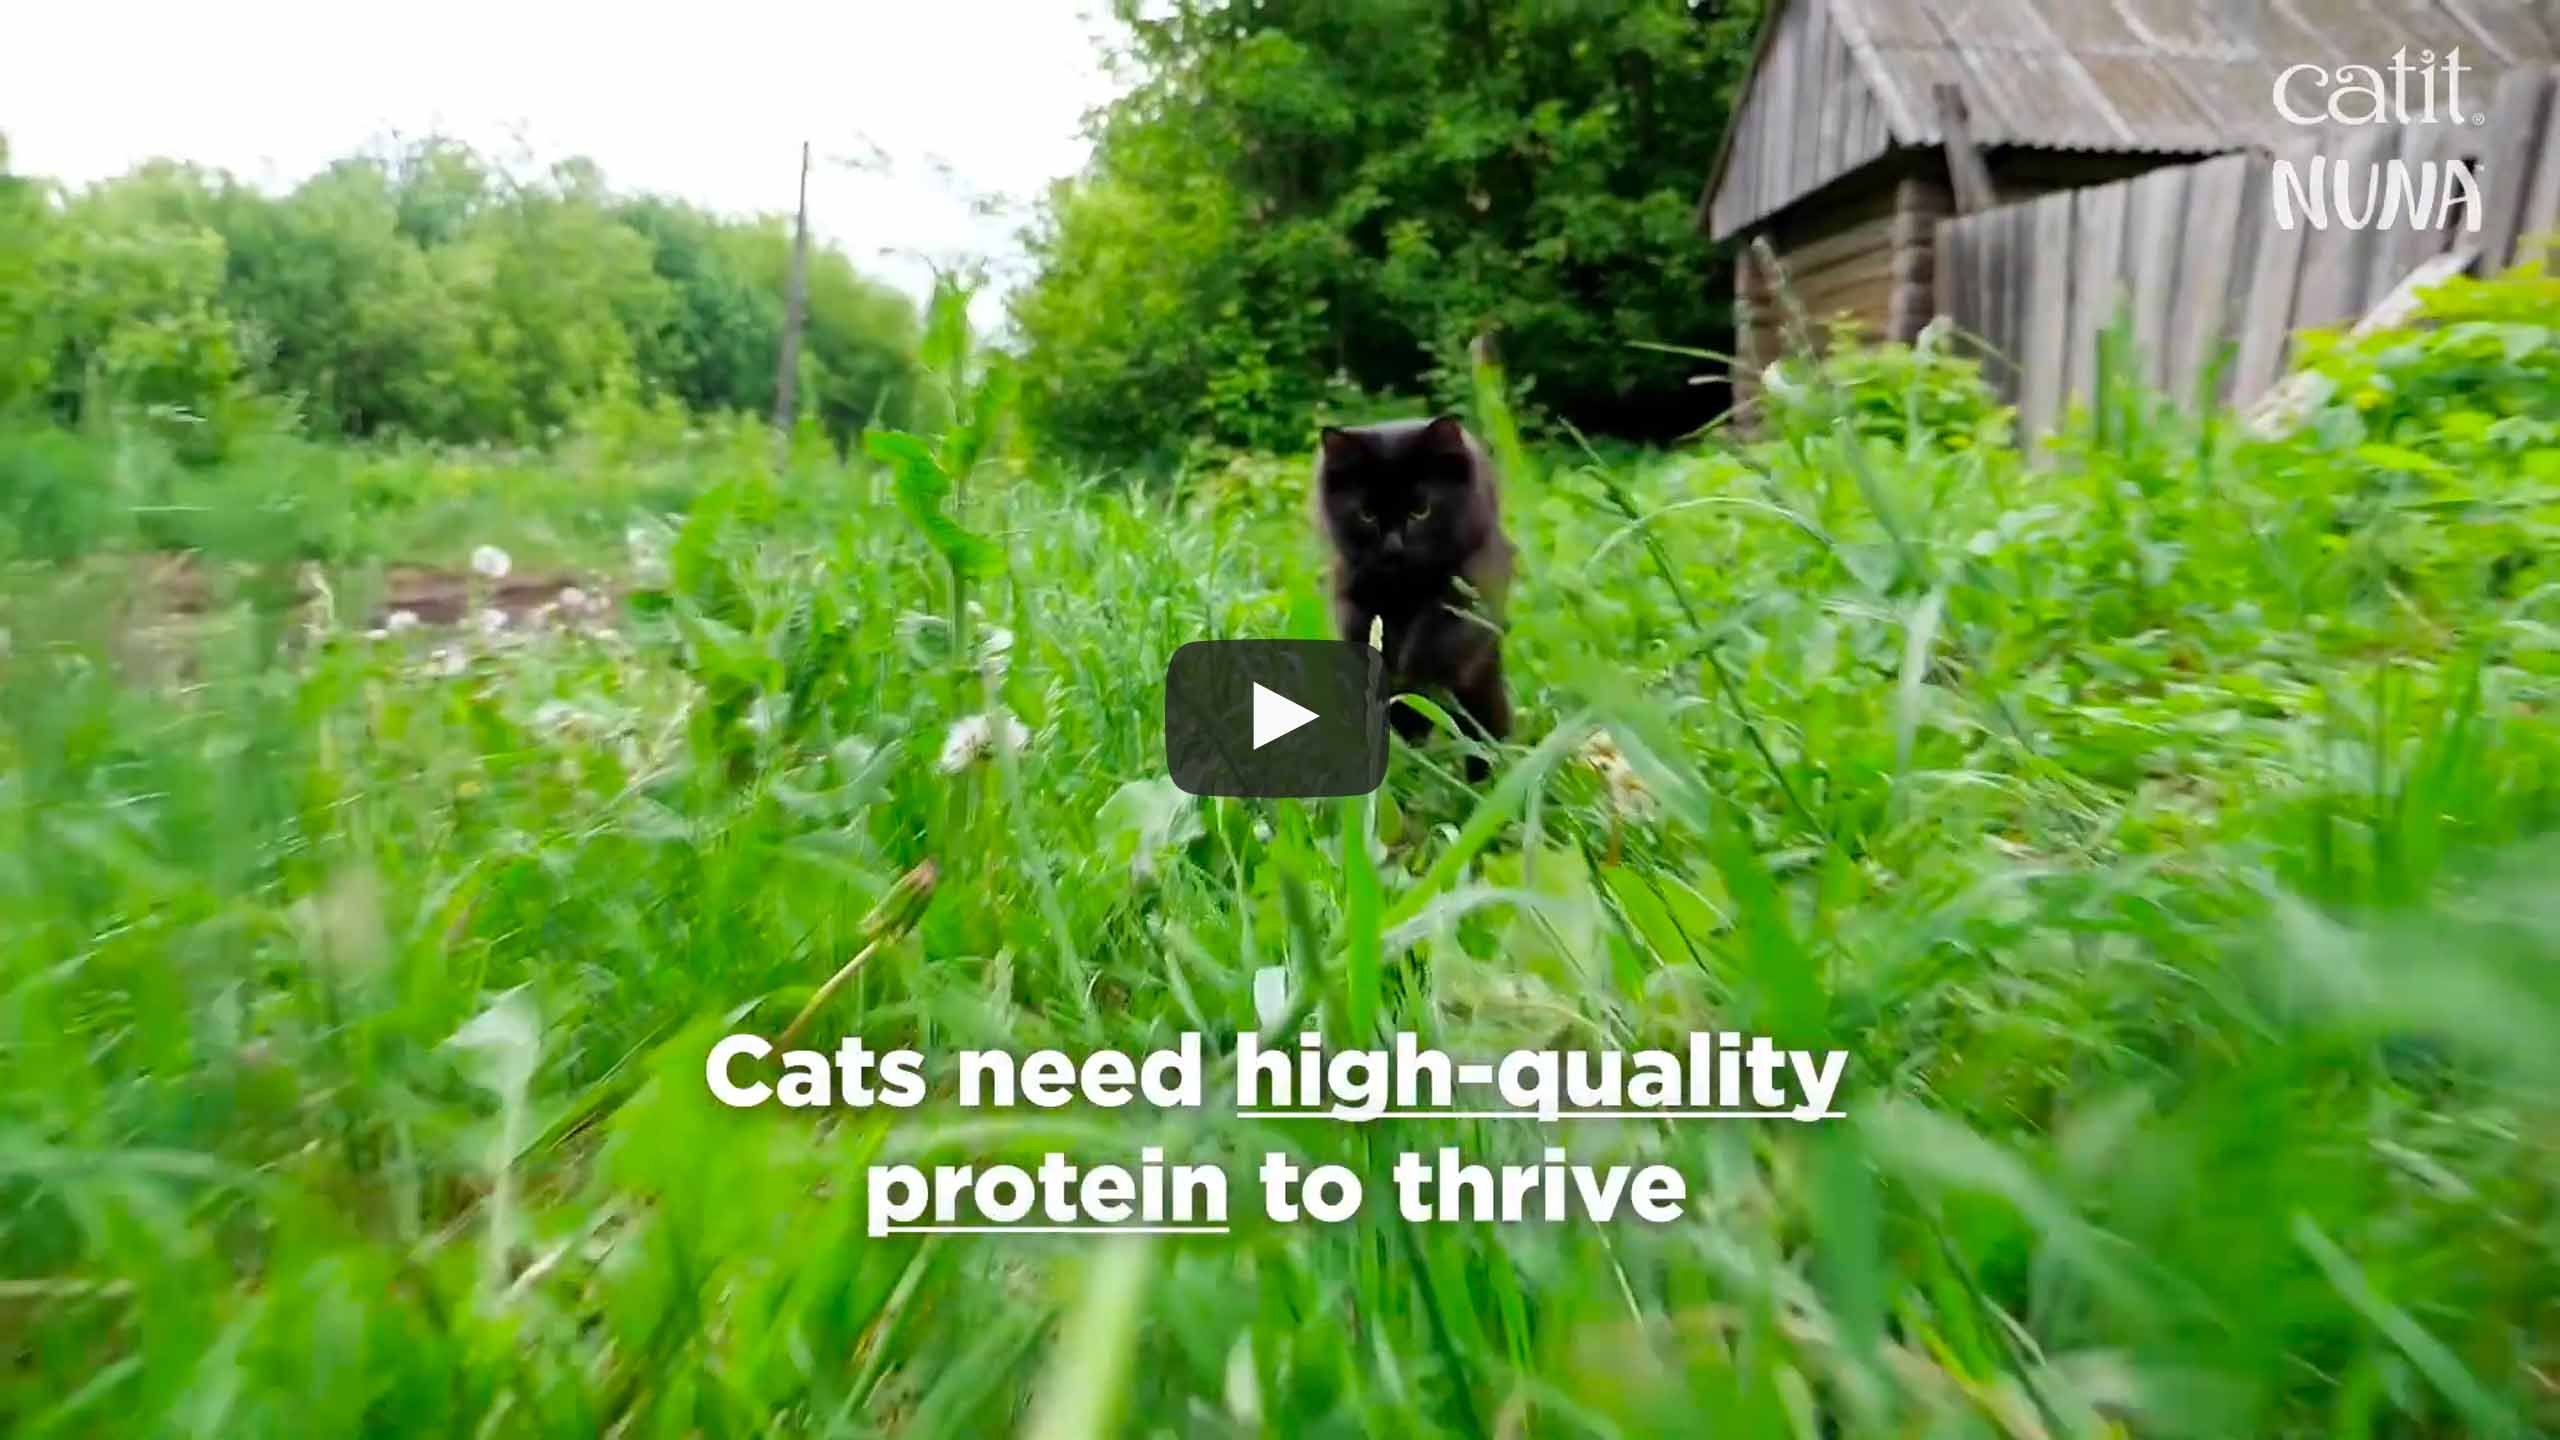 Wideo do karmy dla kotów Catit Nuna